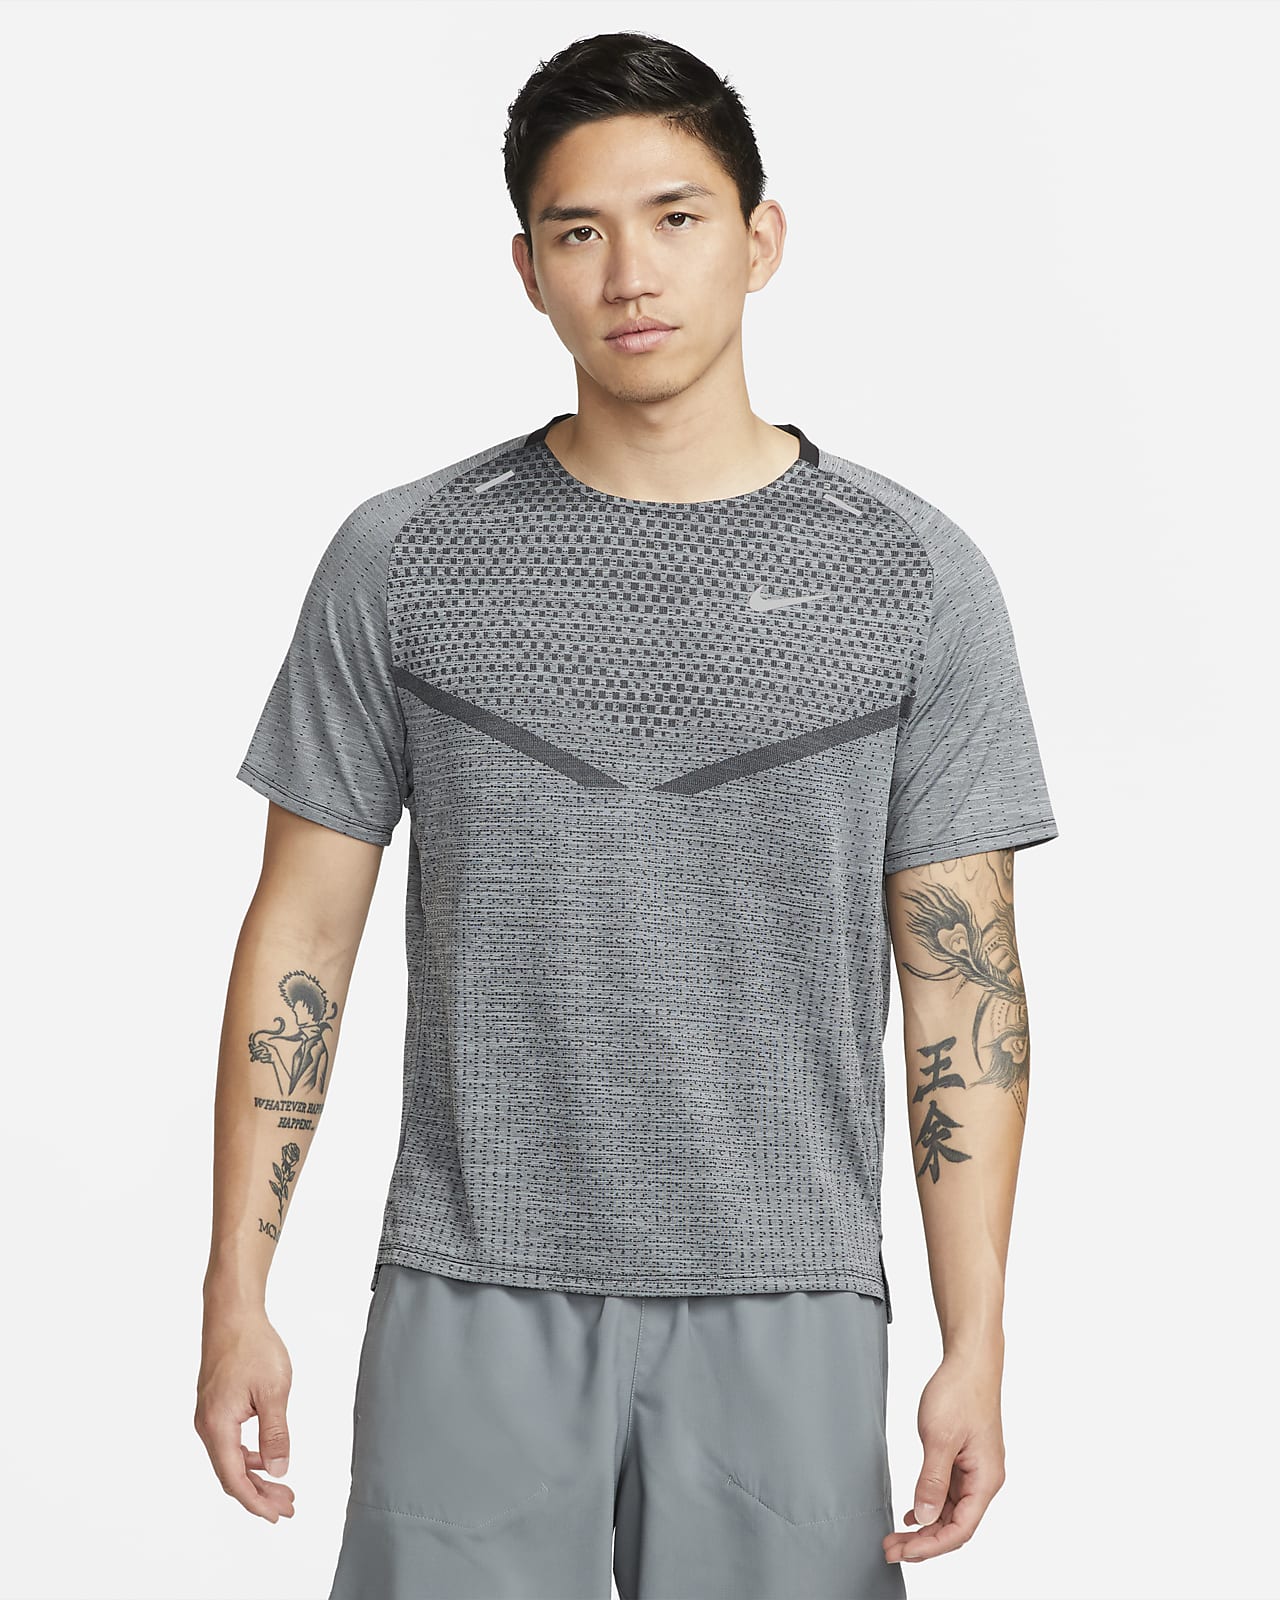 Nike Dri-FIT ADV TechKnit Ultra 男款短袖跑步上衣